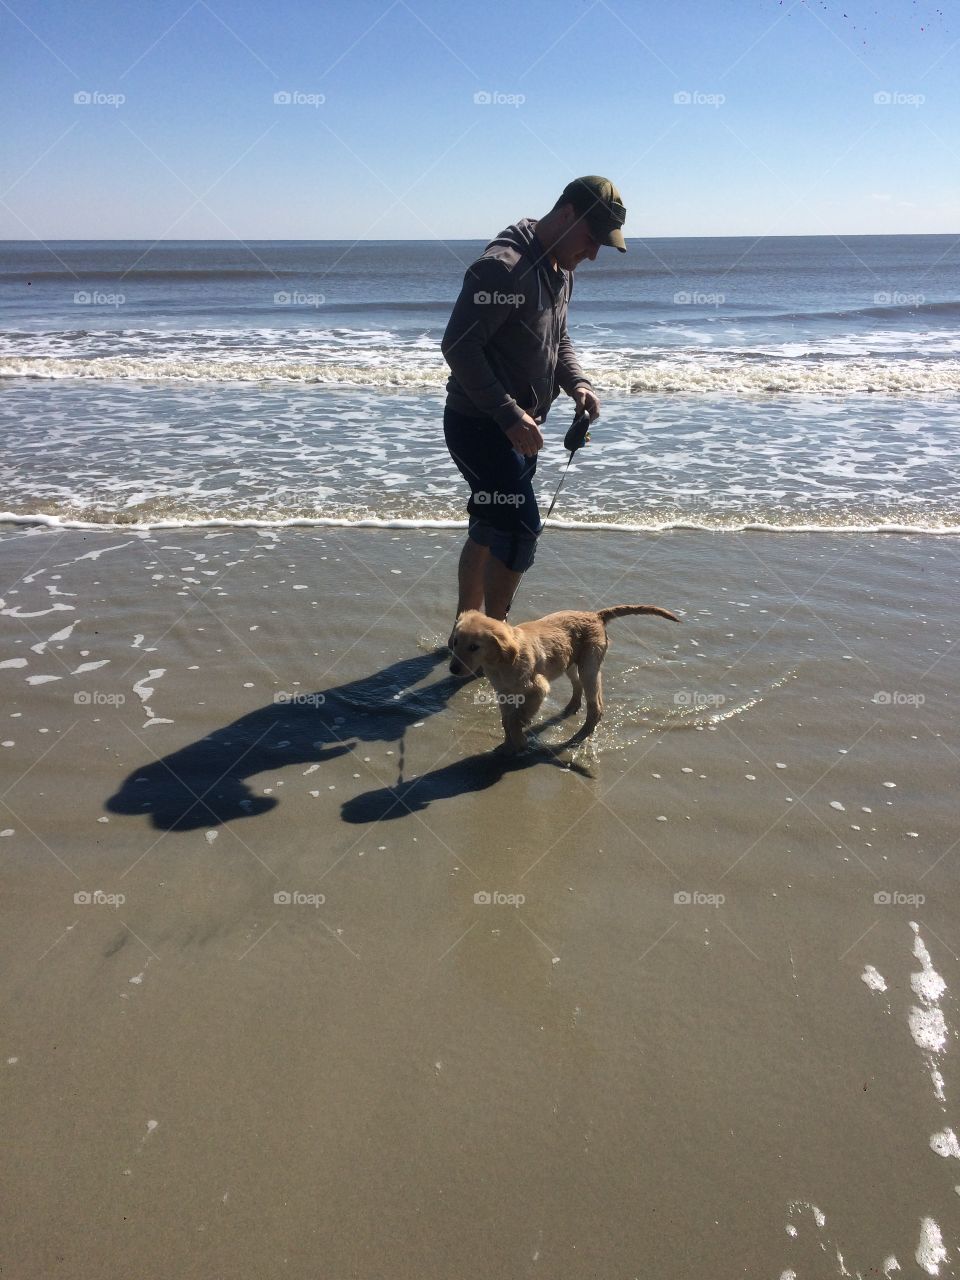 Puppy at beach.